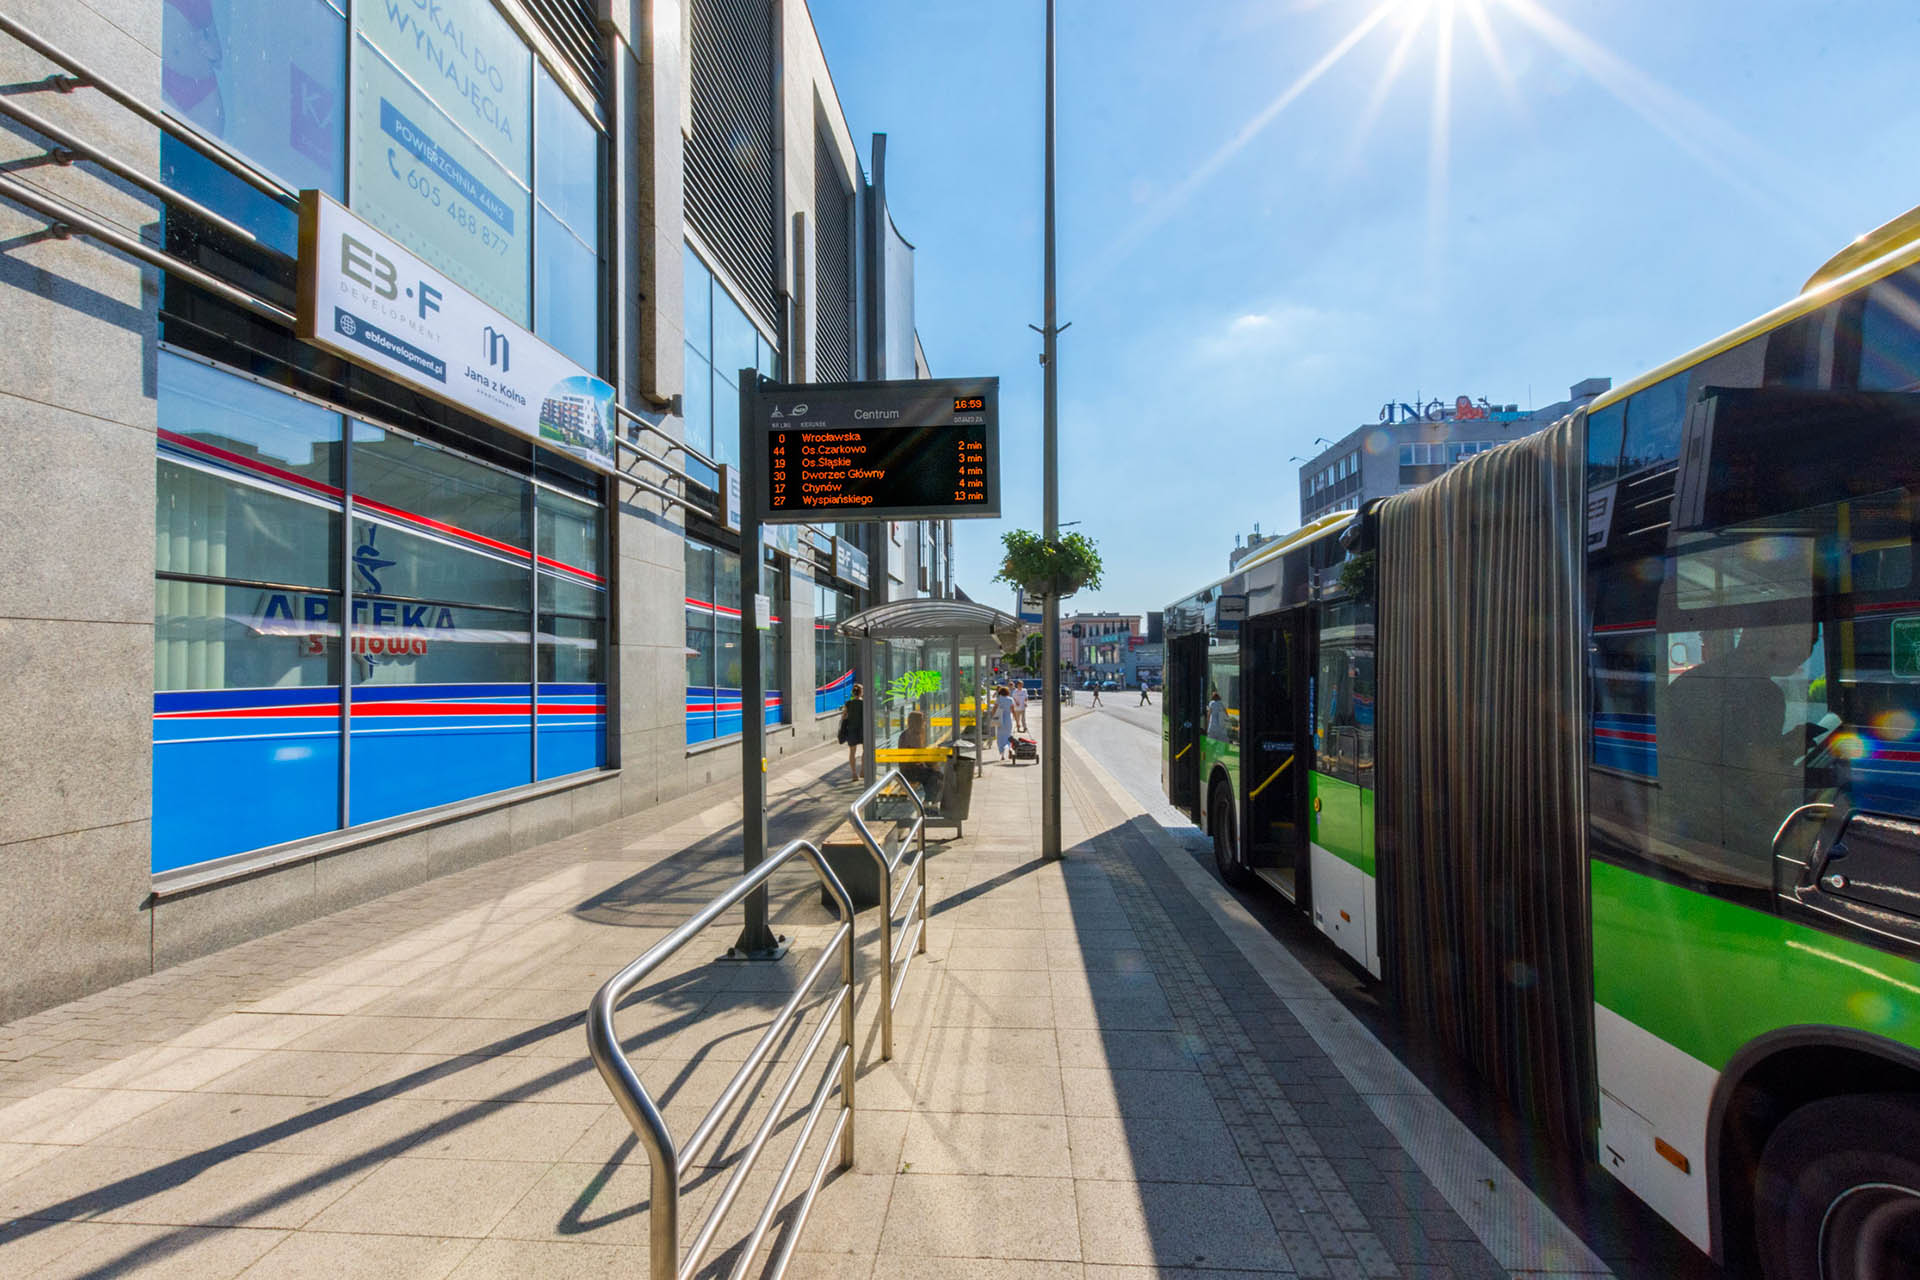 Tablice wyświetlacze dynamicznej informacji pasażerskiej LED RGB, LED RGB Passenger Information Displays, the city of Zielona Gora